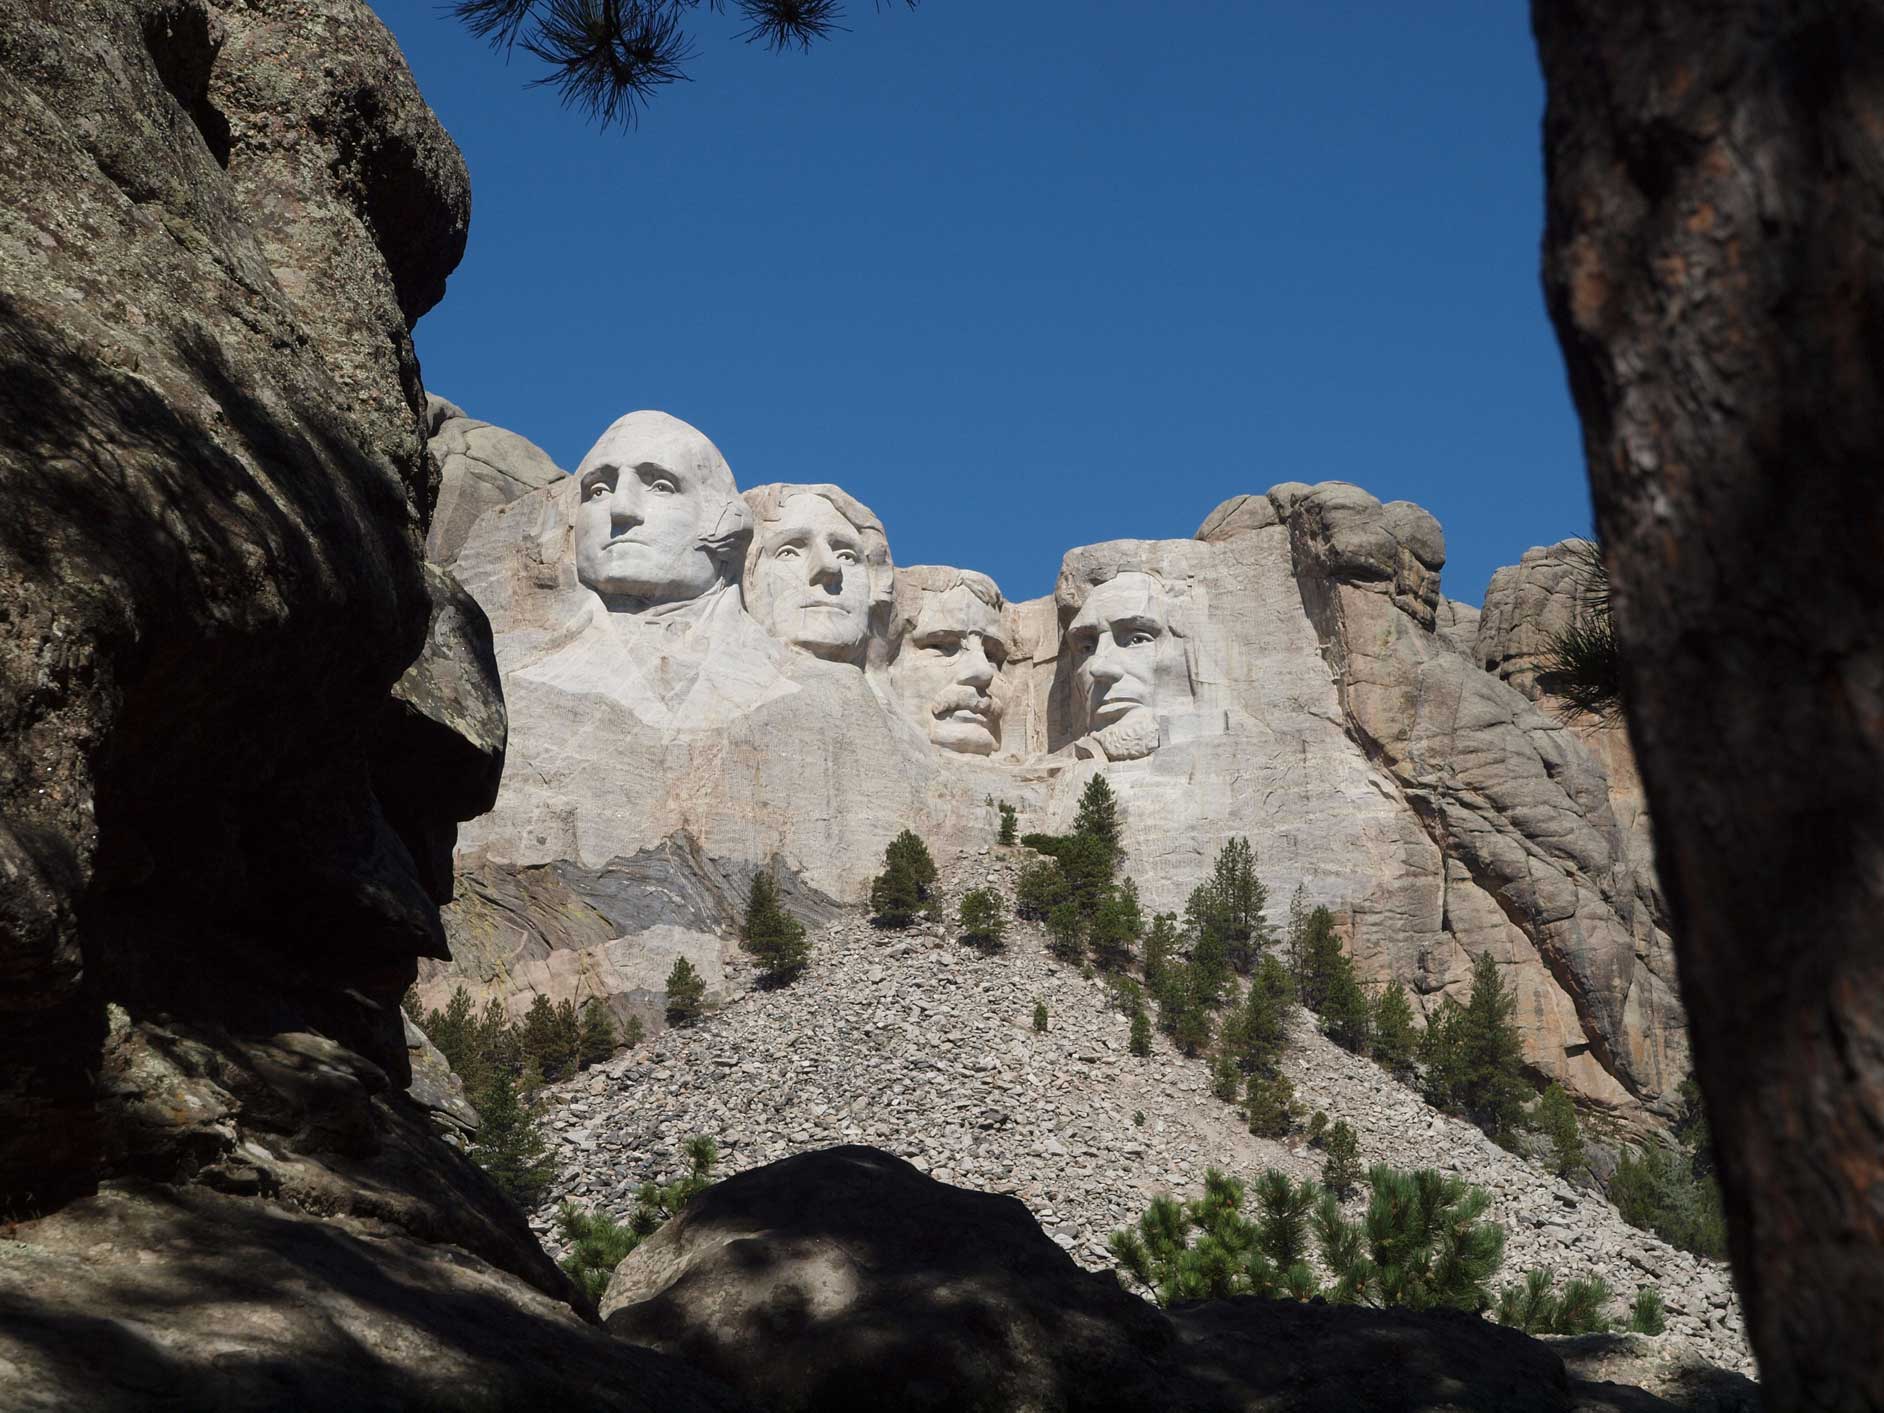 Mt Rushmore monument